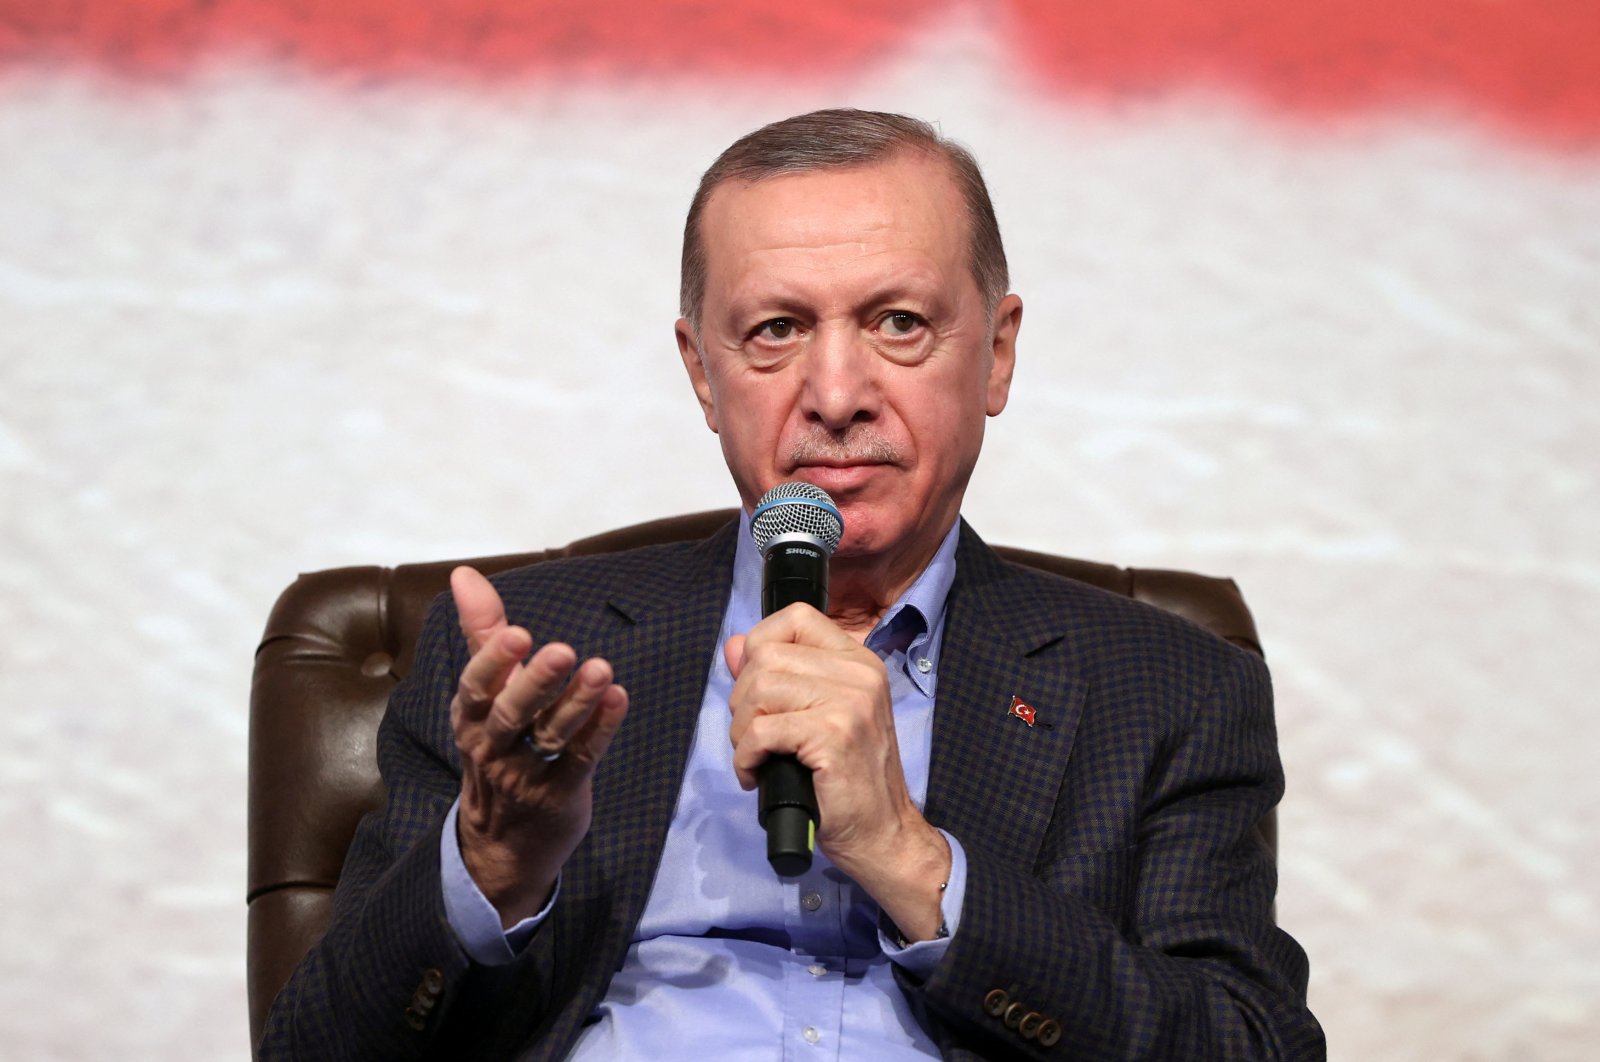 President Recep Tayyip Erdoğan talks during an event in Bilecik, Türkiye, Jan. 27, 2023. (Reuters Photo)